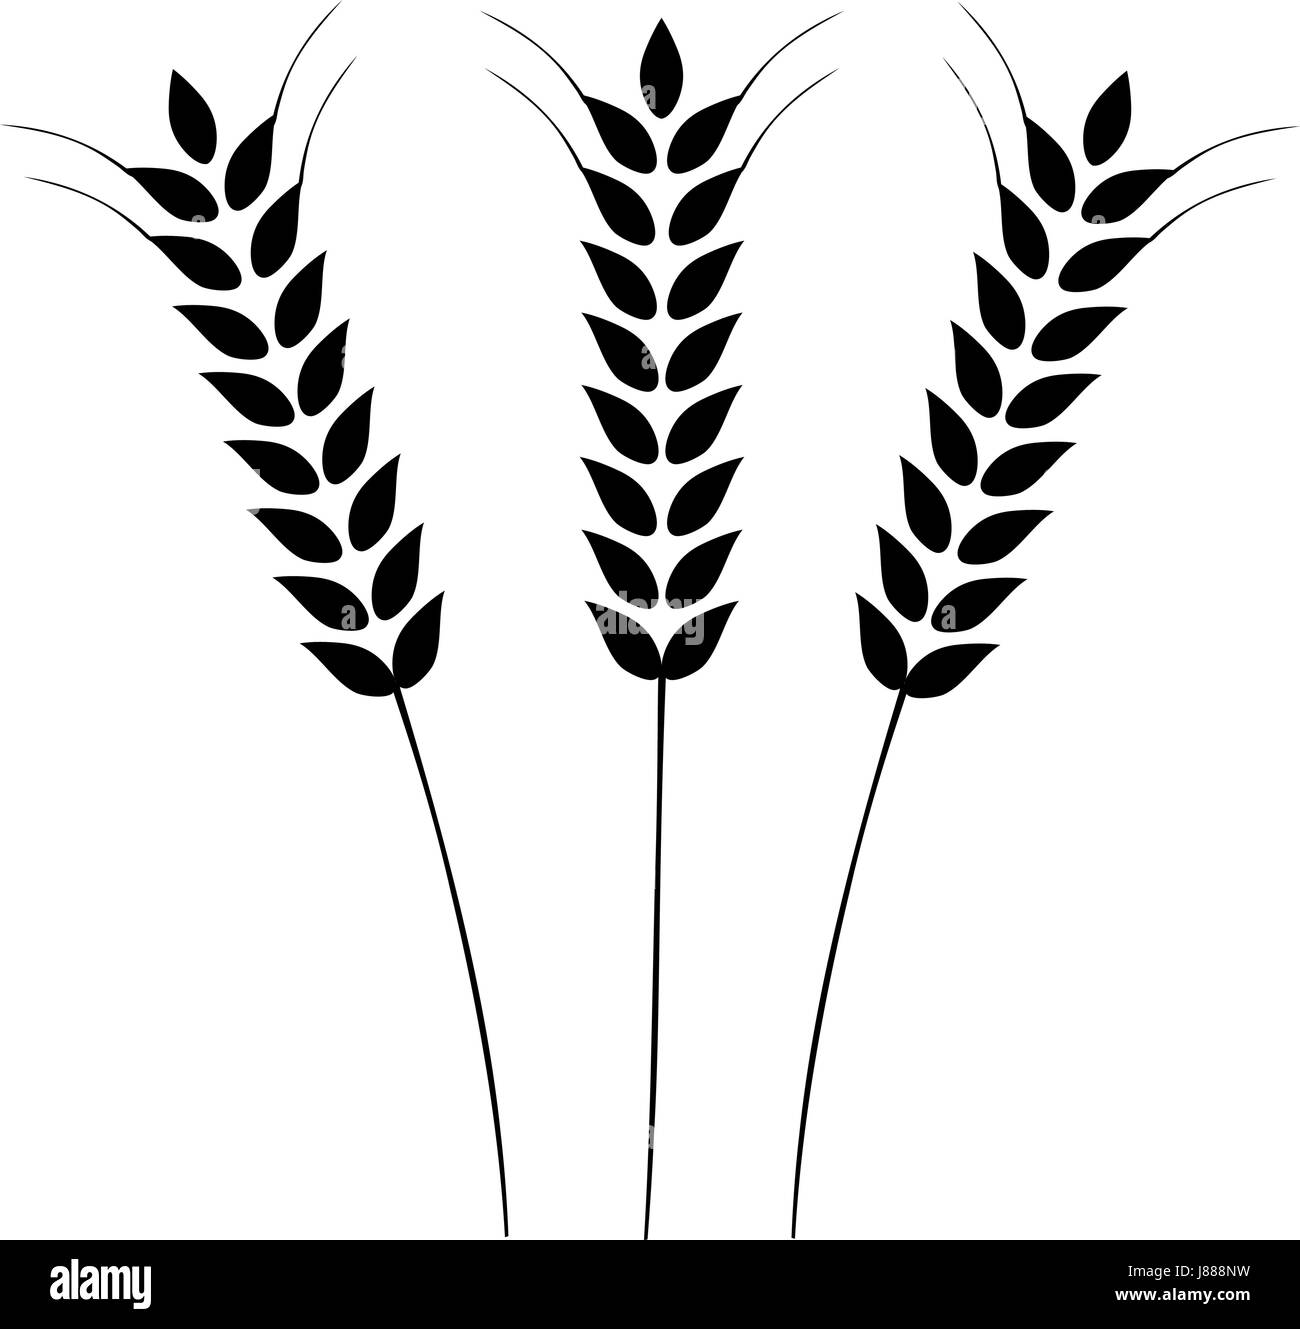 Vektor-Illustration der Ohren von Weizen, Gerste oder Roggen. Ideal für die Verpackung von Brot. Vektor Icon. Stock Vektor